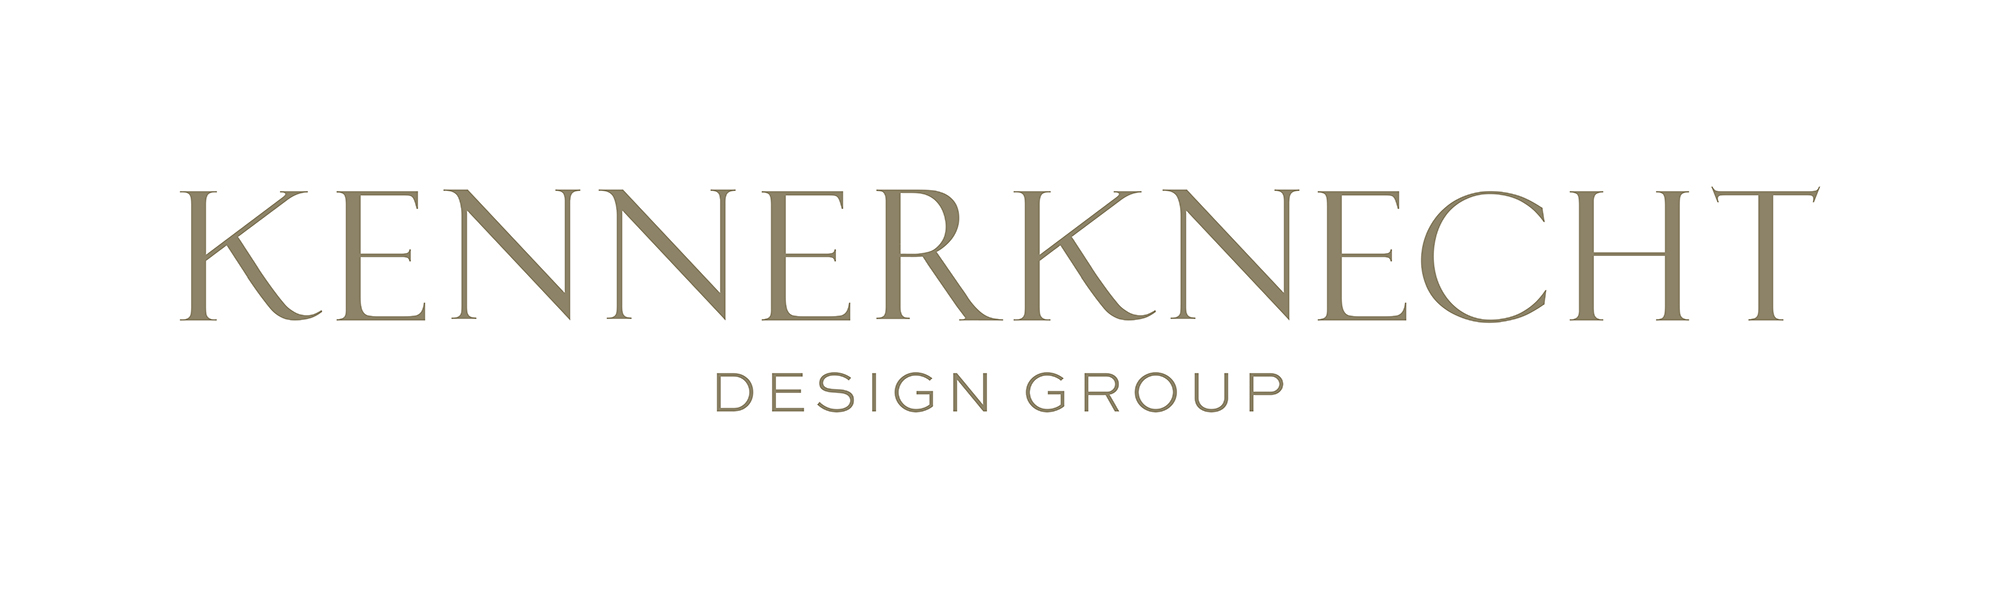 Kennerknecht Design Group Logo